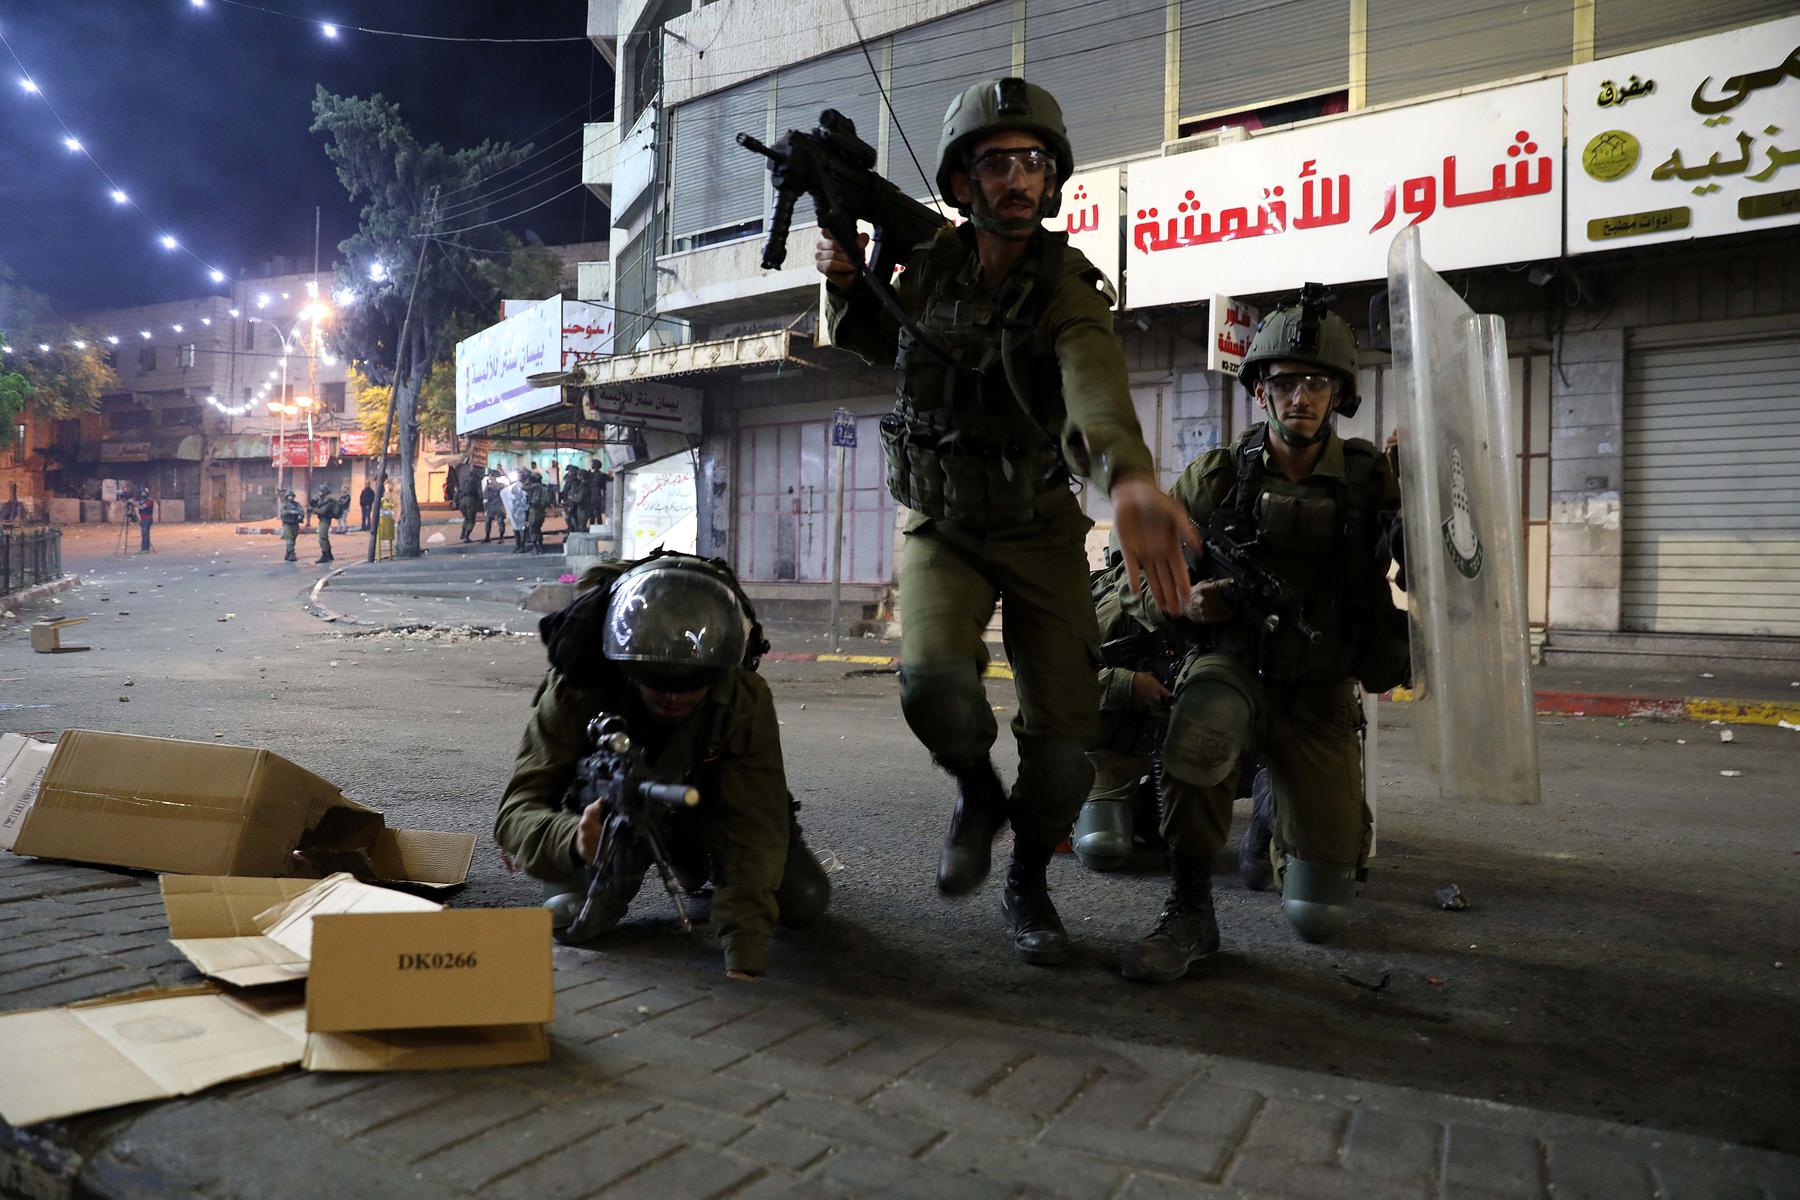 11 мая. Израильские войска во время столкновений с палестинскими демонстрантами в центре города Хеврон.Фото: EPA-EFE